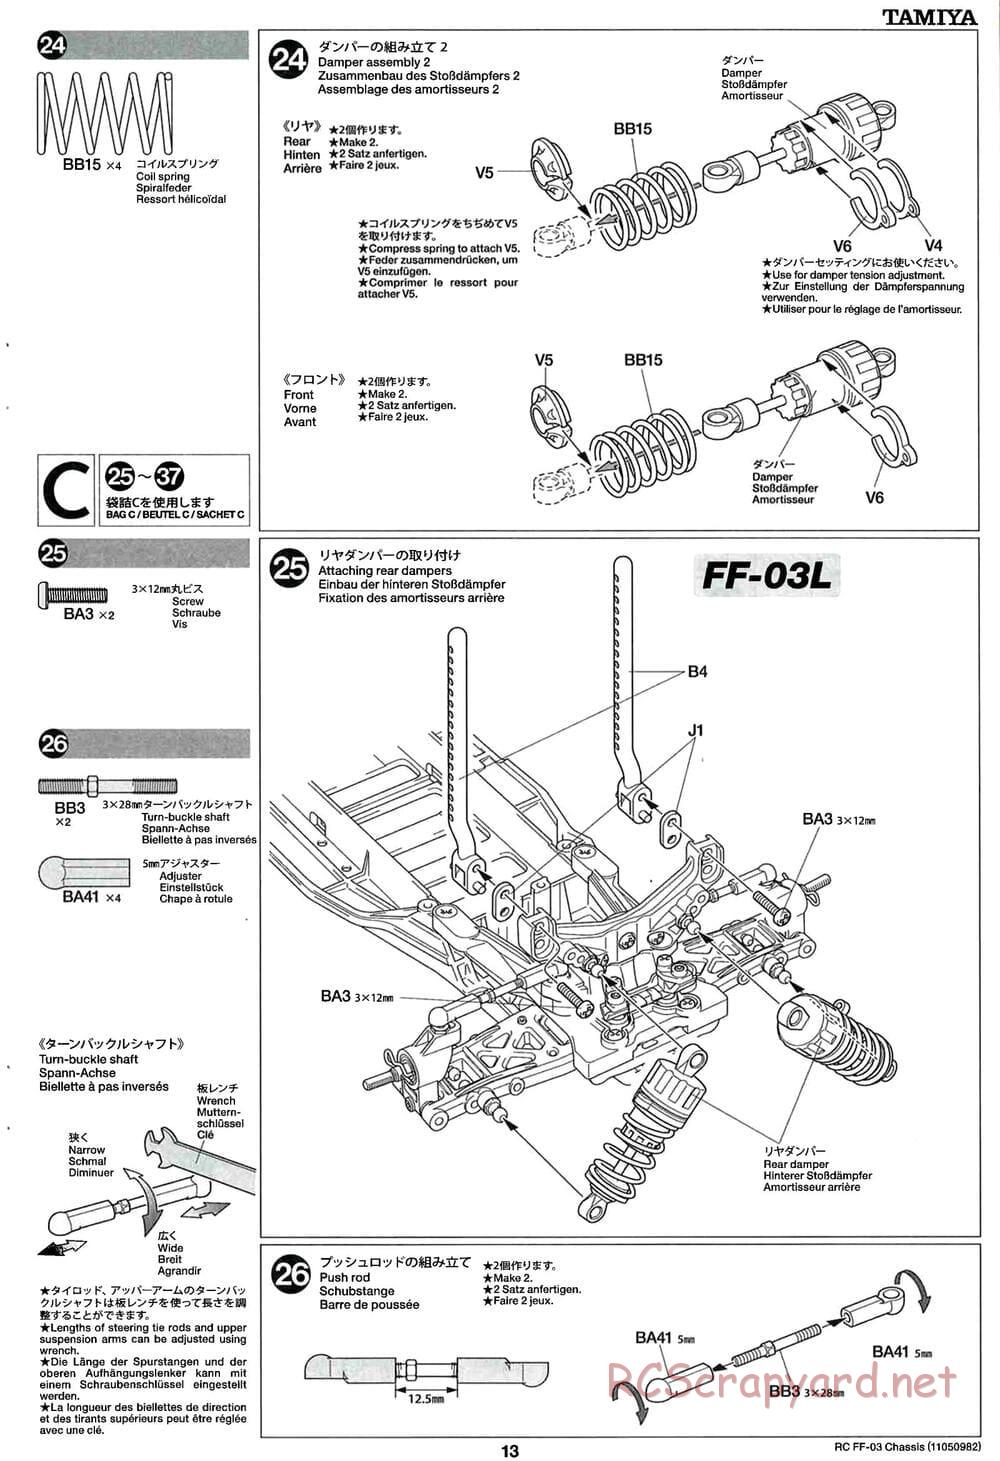 Tamiya - Honda Accord Aero Custom - FF-03 Chassis - Manual - Page 13